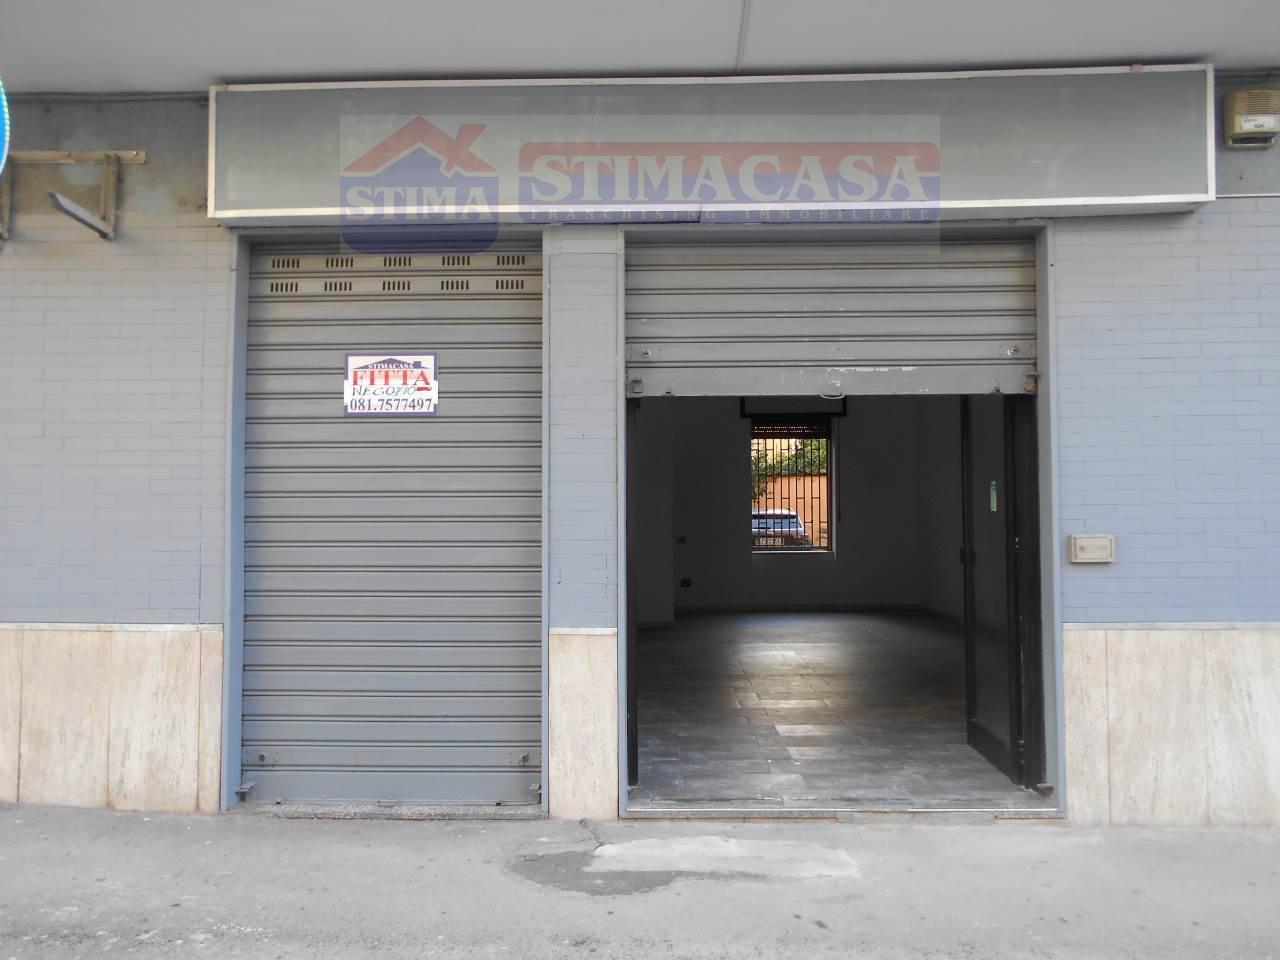 Immobile Commerciale in affitto a Afragola, 1 locali, prezzo € 550 | PortaleAgenzieImmobiliari.it